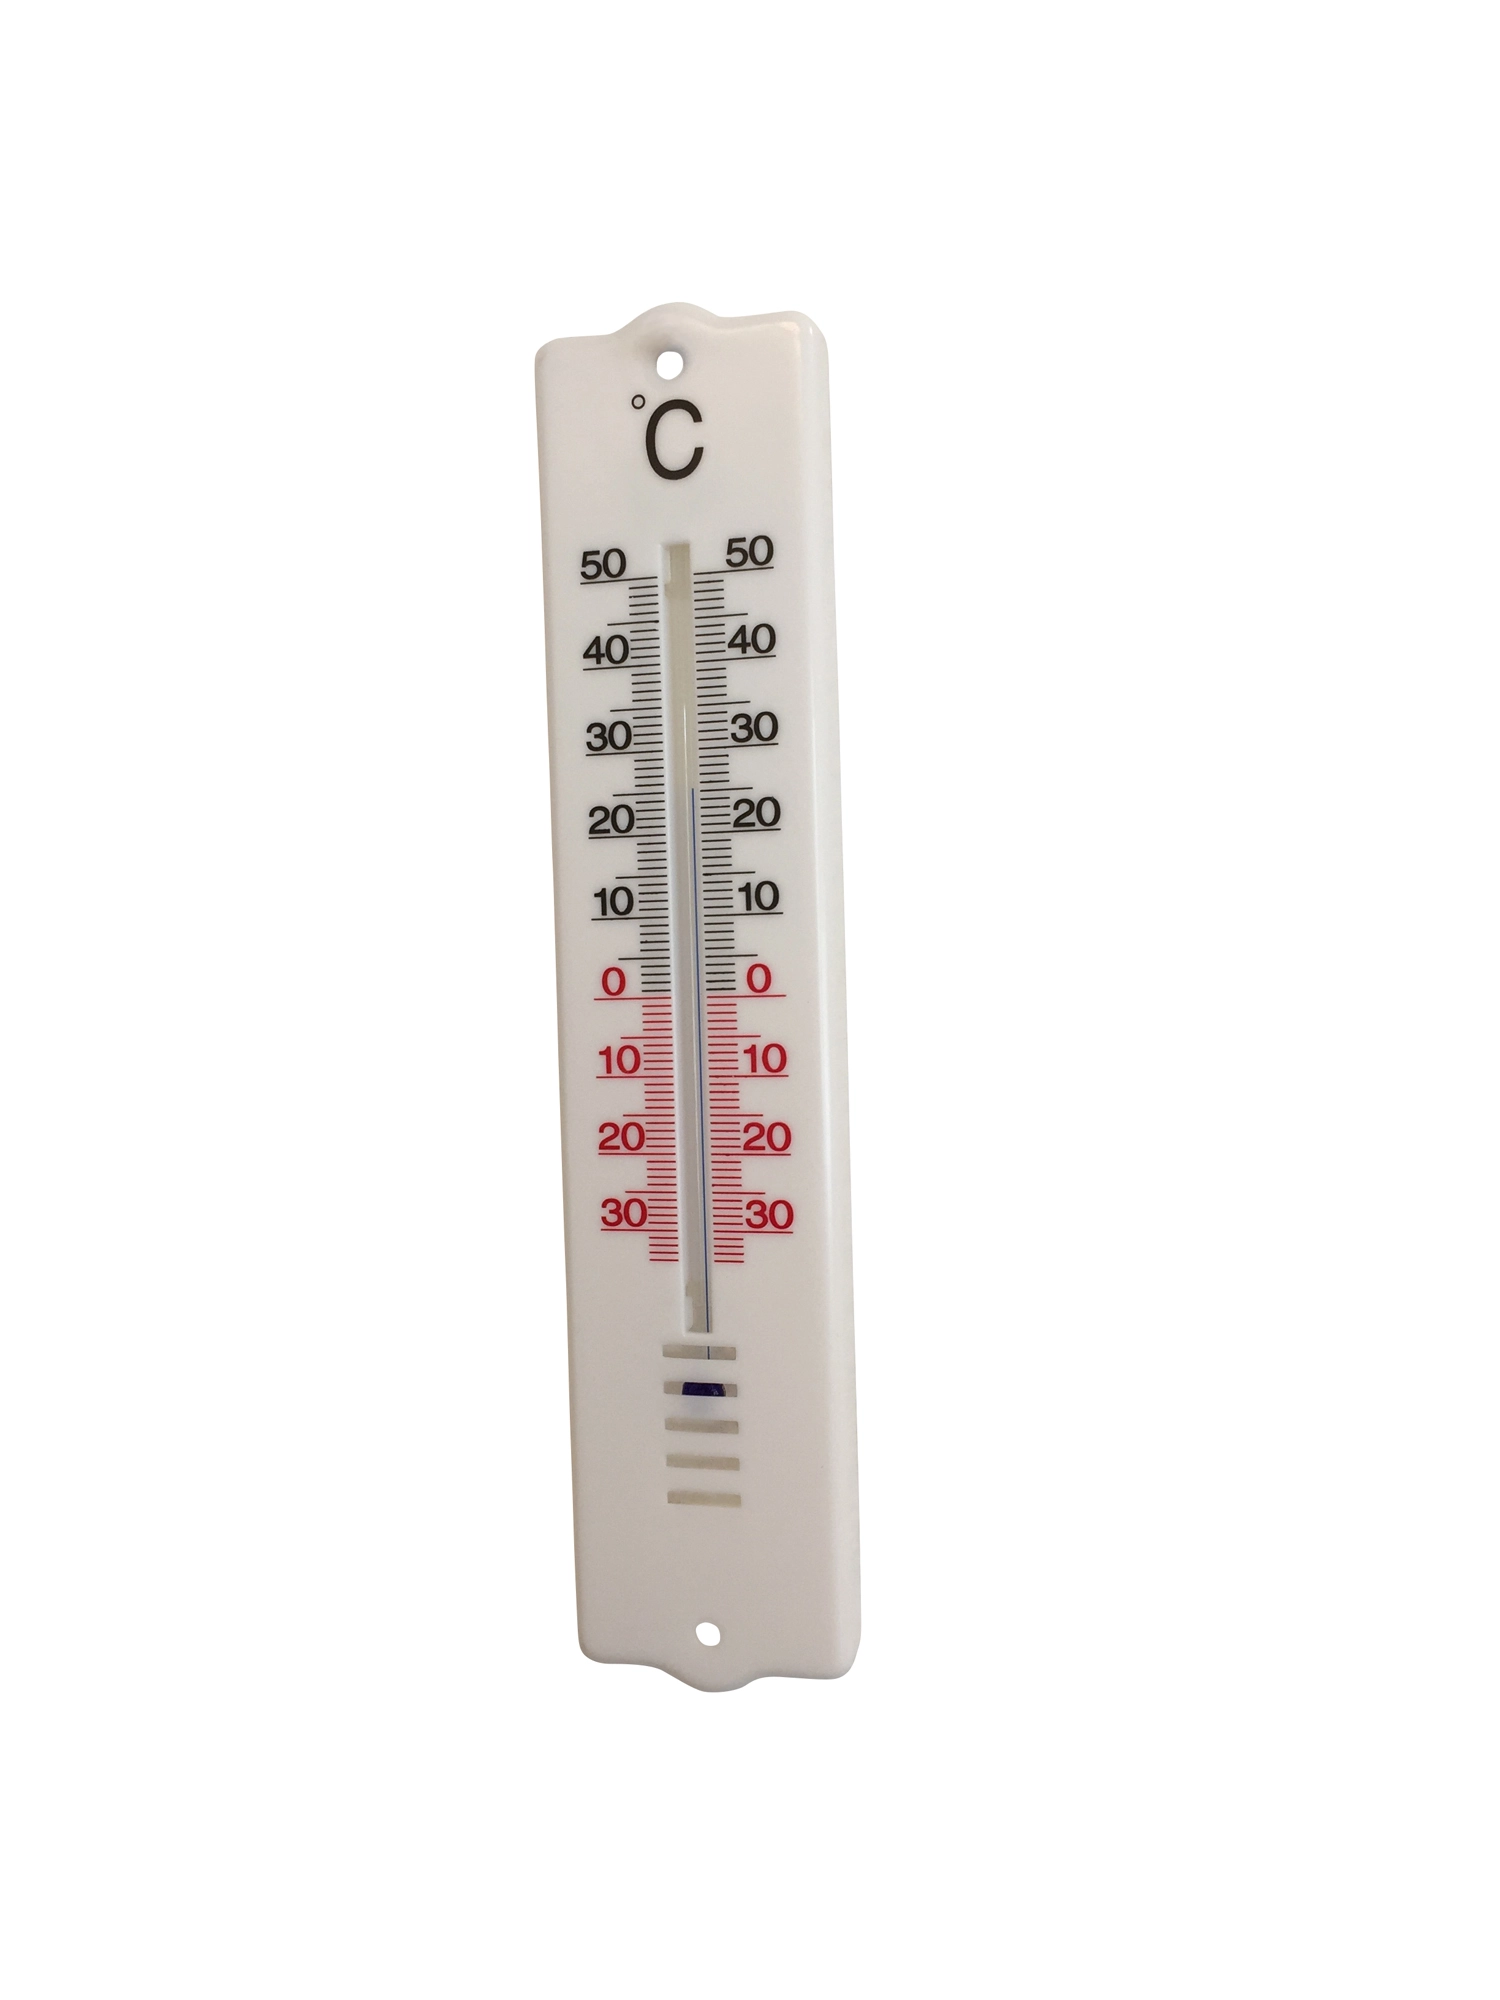 Möller Therm Innen- und Aussen-Thermometer 20,7 cm kaufen bei OBI